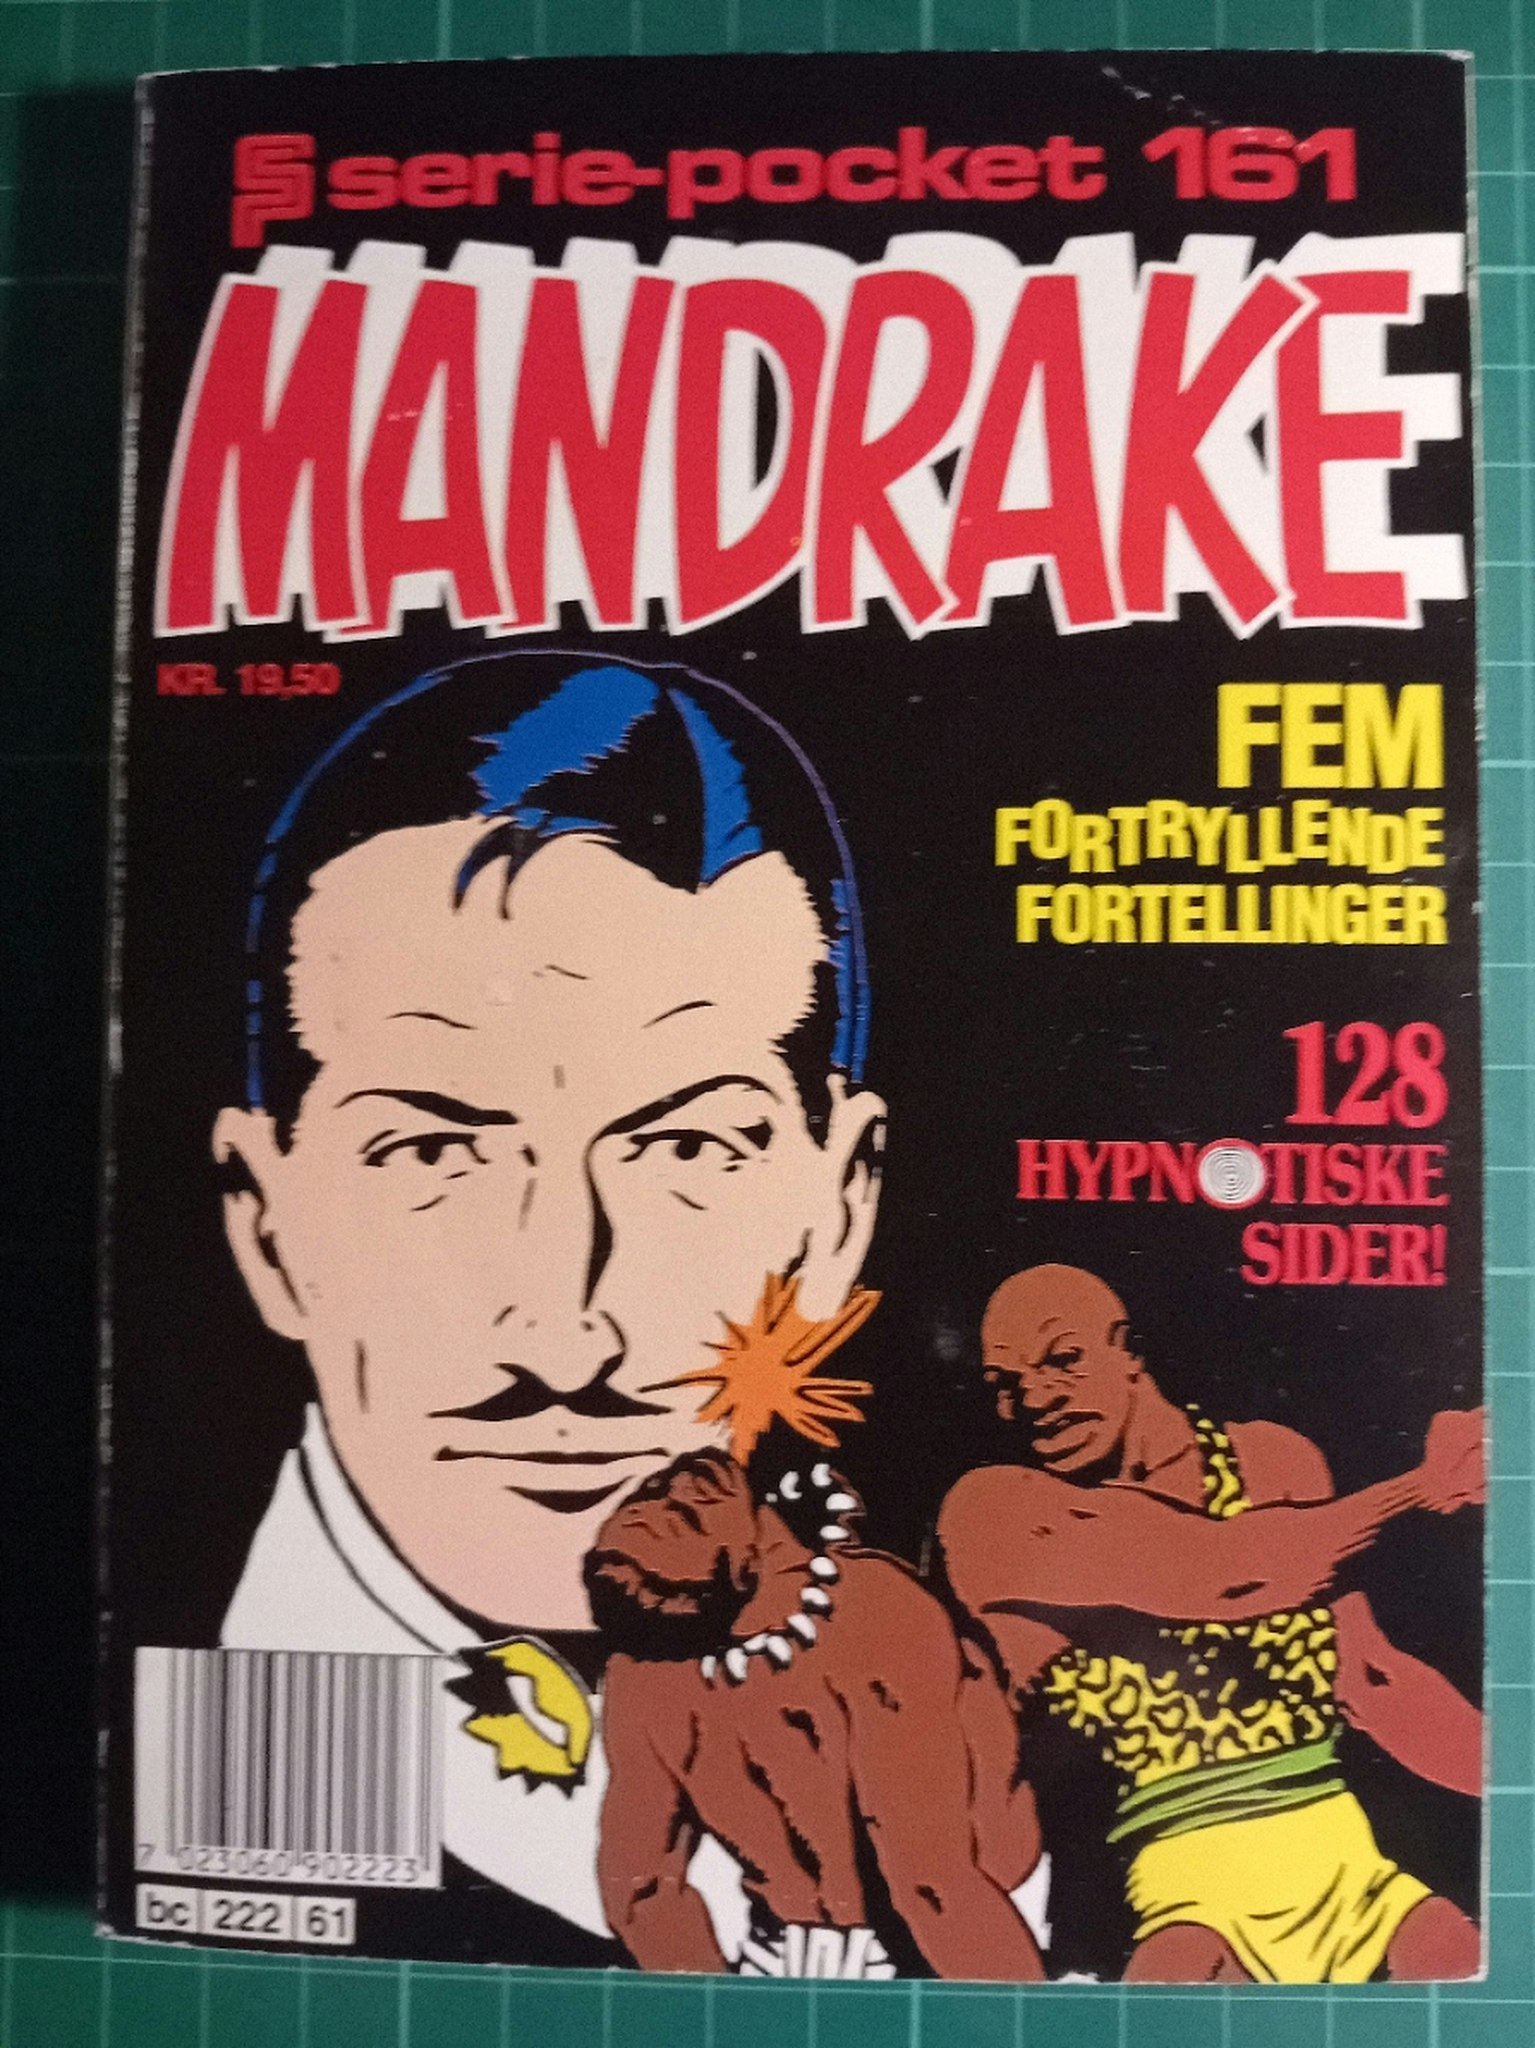 Serie-pocket 161 : Mandrake